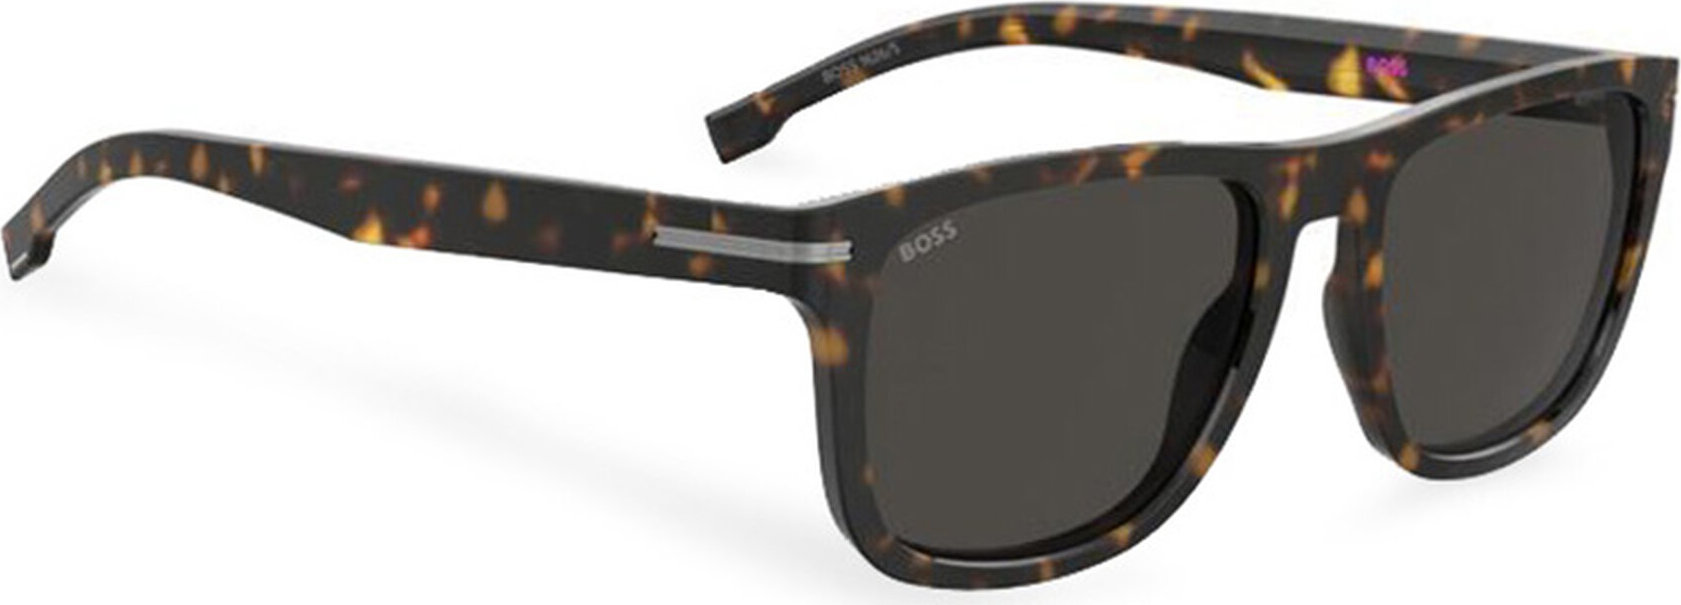 Sluneční brýle Boss 1626/S 206806 Havana 086 IR